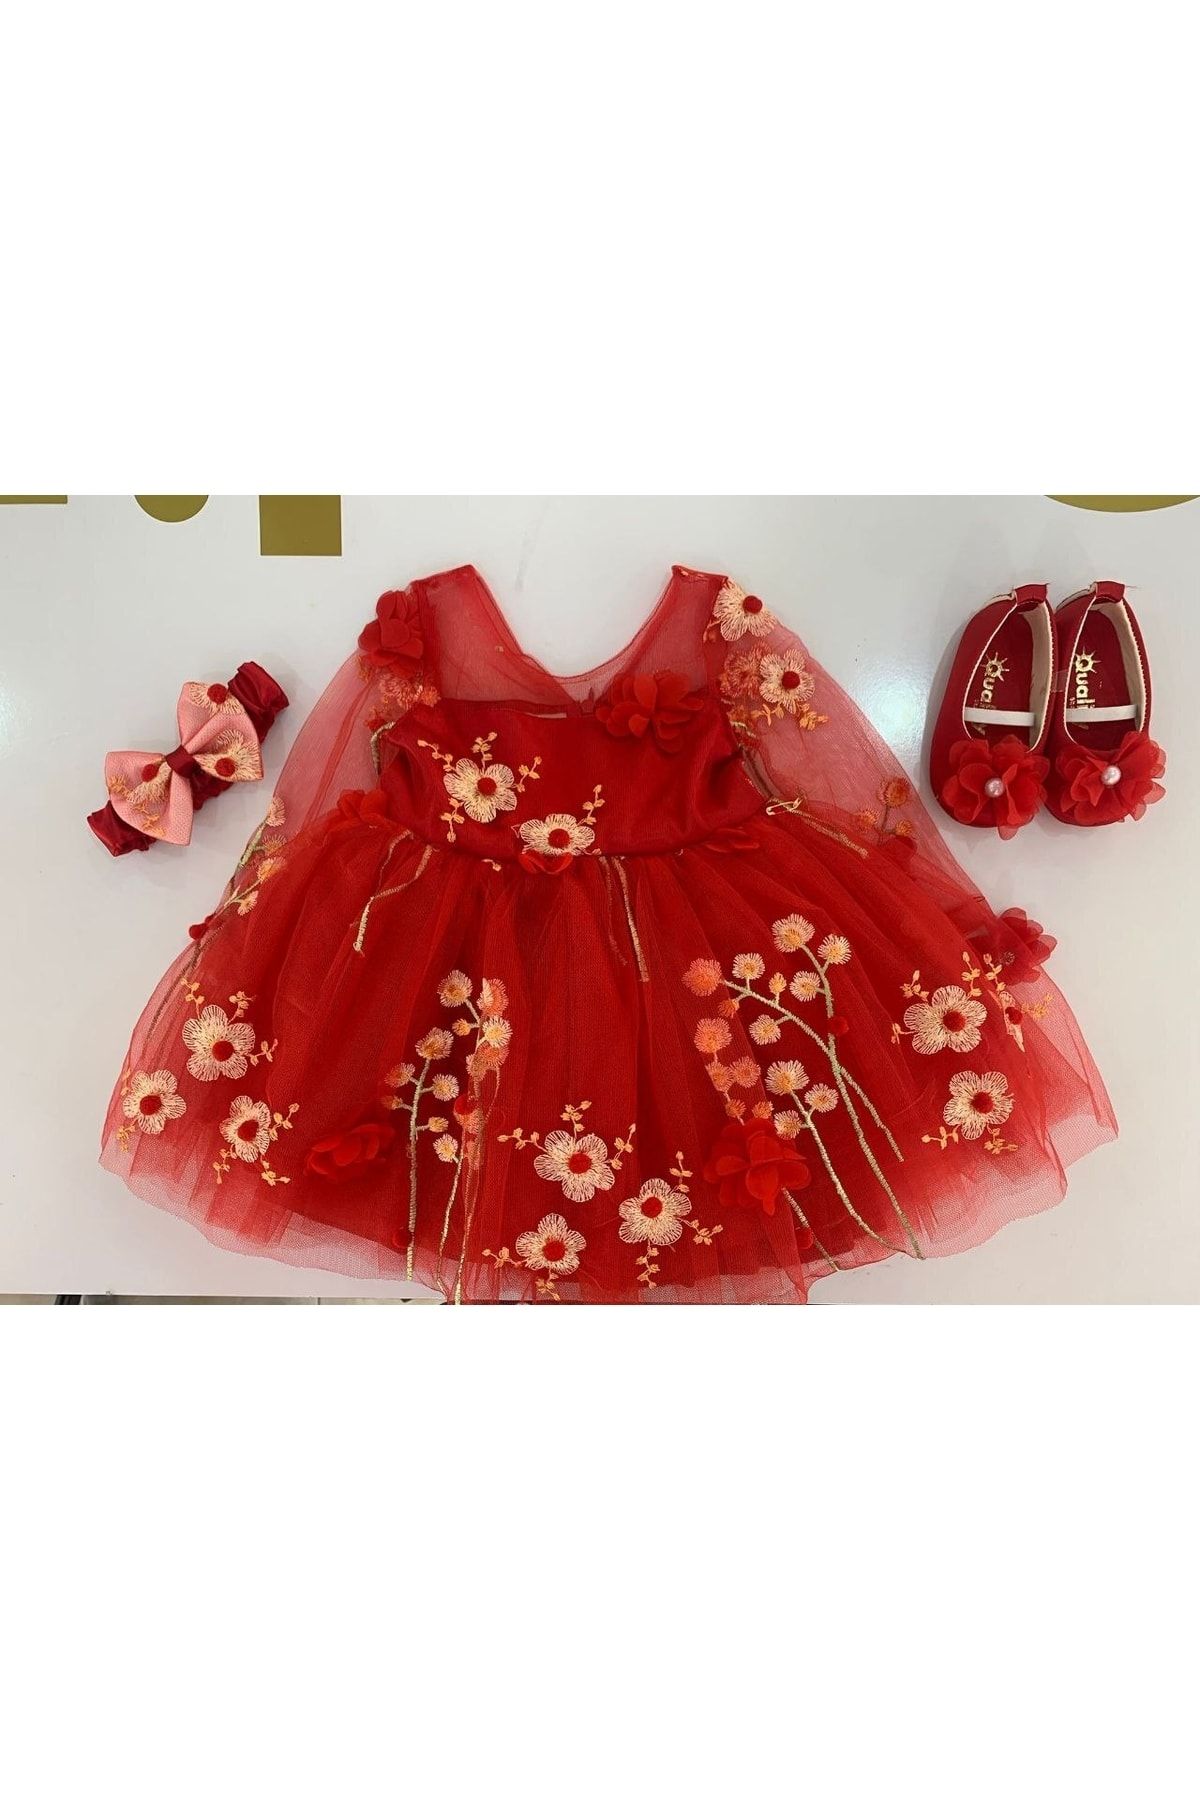 Sare Çocuk Giyim Kız Bebek Abiye Elbise Prenses Model Tütü Abiye Elbise Mevlüt Takım Bebek Doğum Günü Elbise